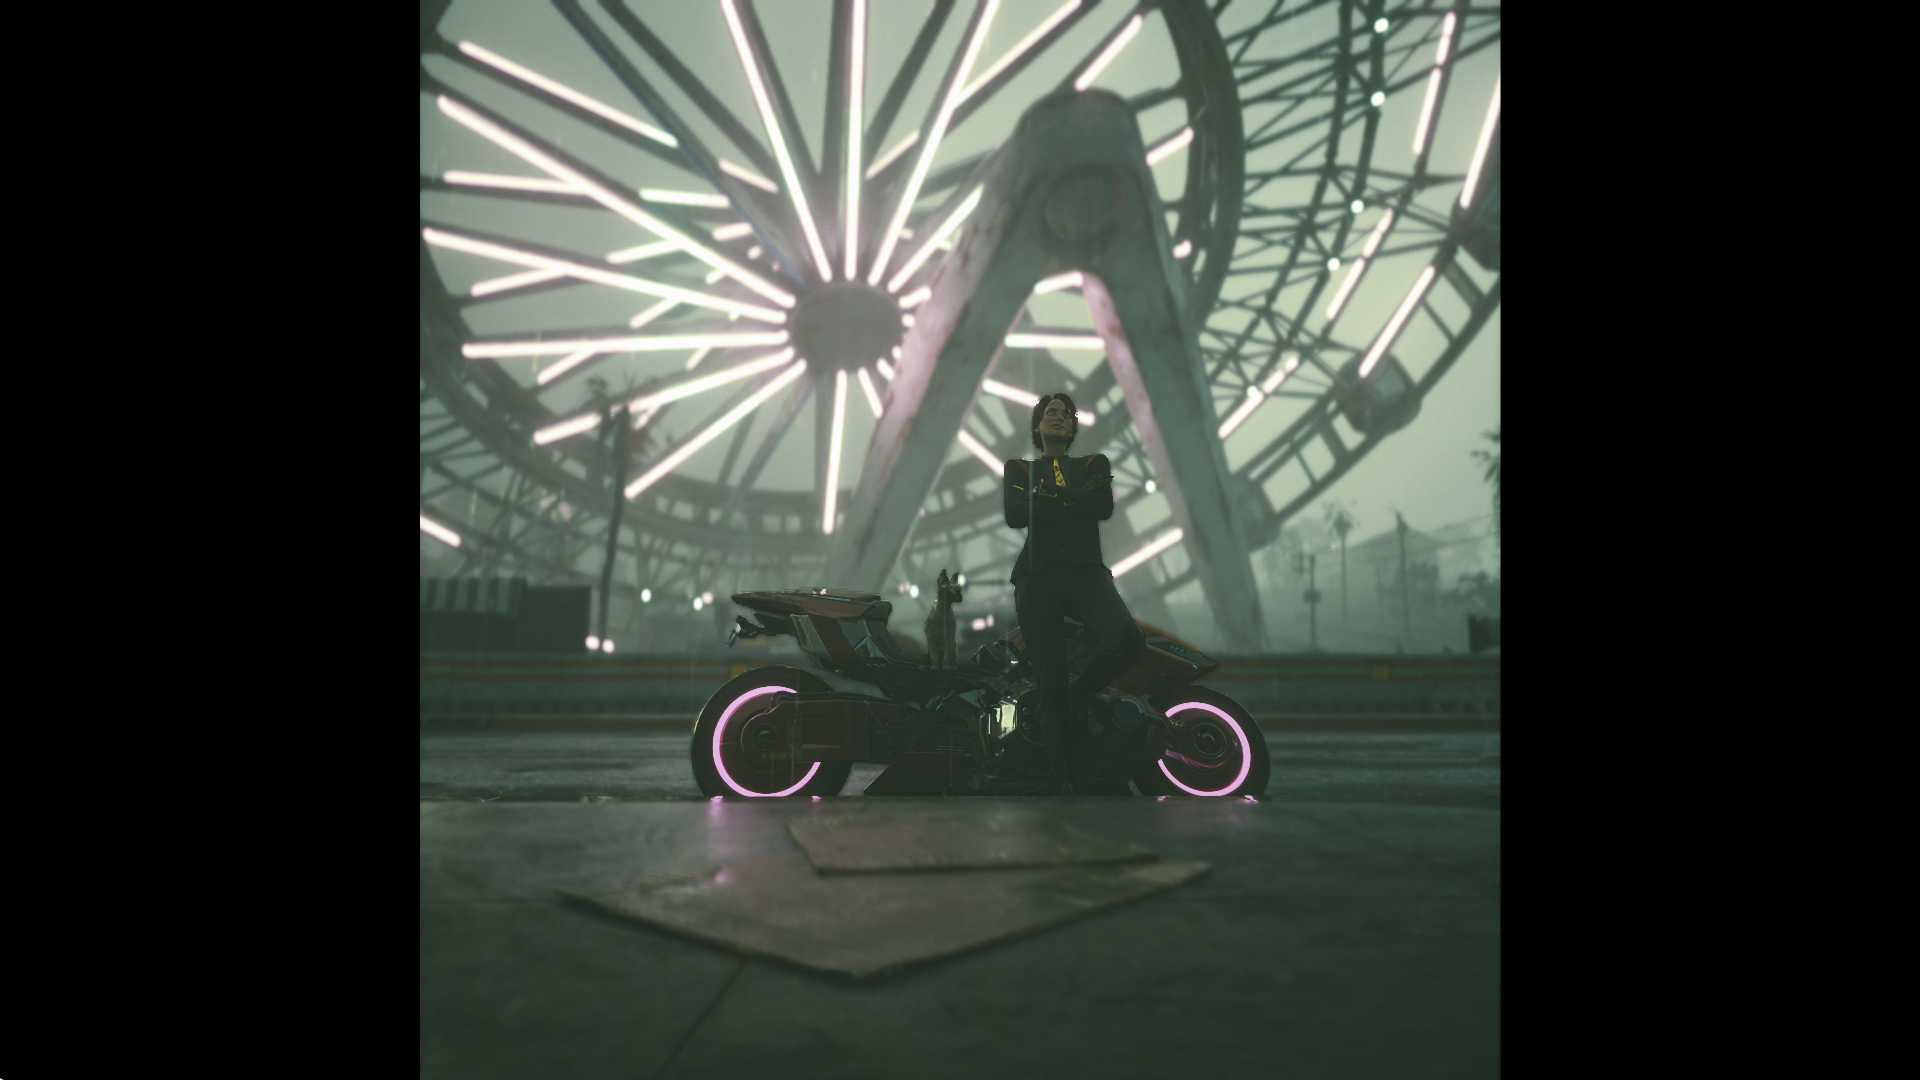 Cyberpunk Cyberpunk 2077 Motorcycle Neon Suit And Tie Leaned Back Women Short Hair Ferris Wheel Pola 1920x1080